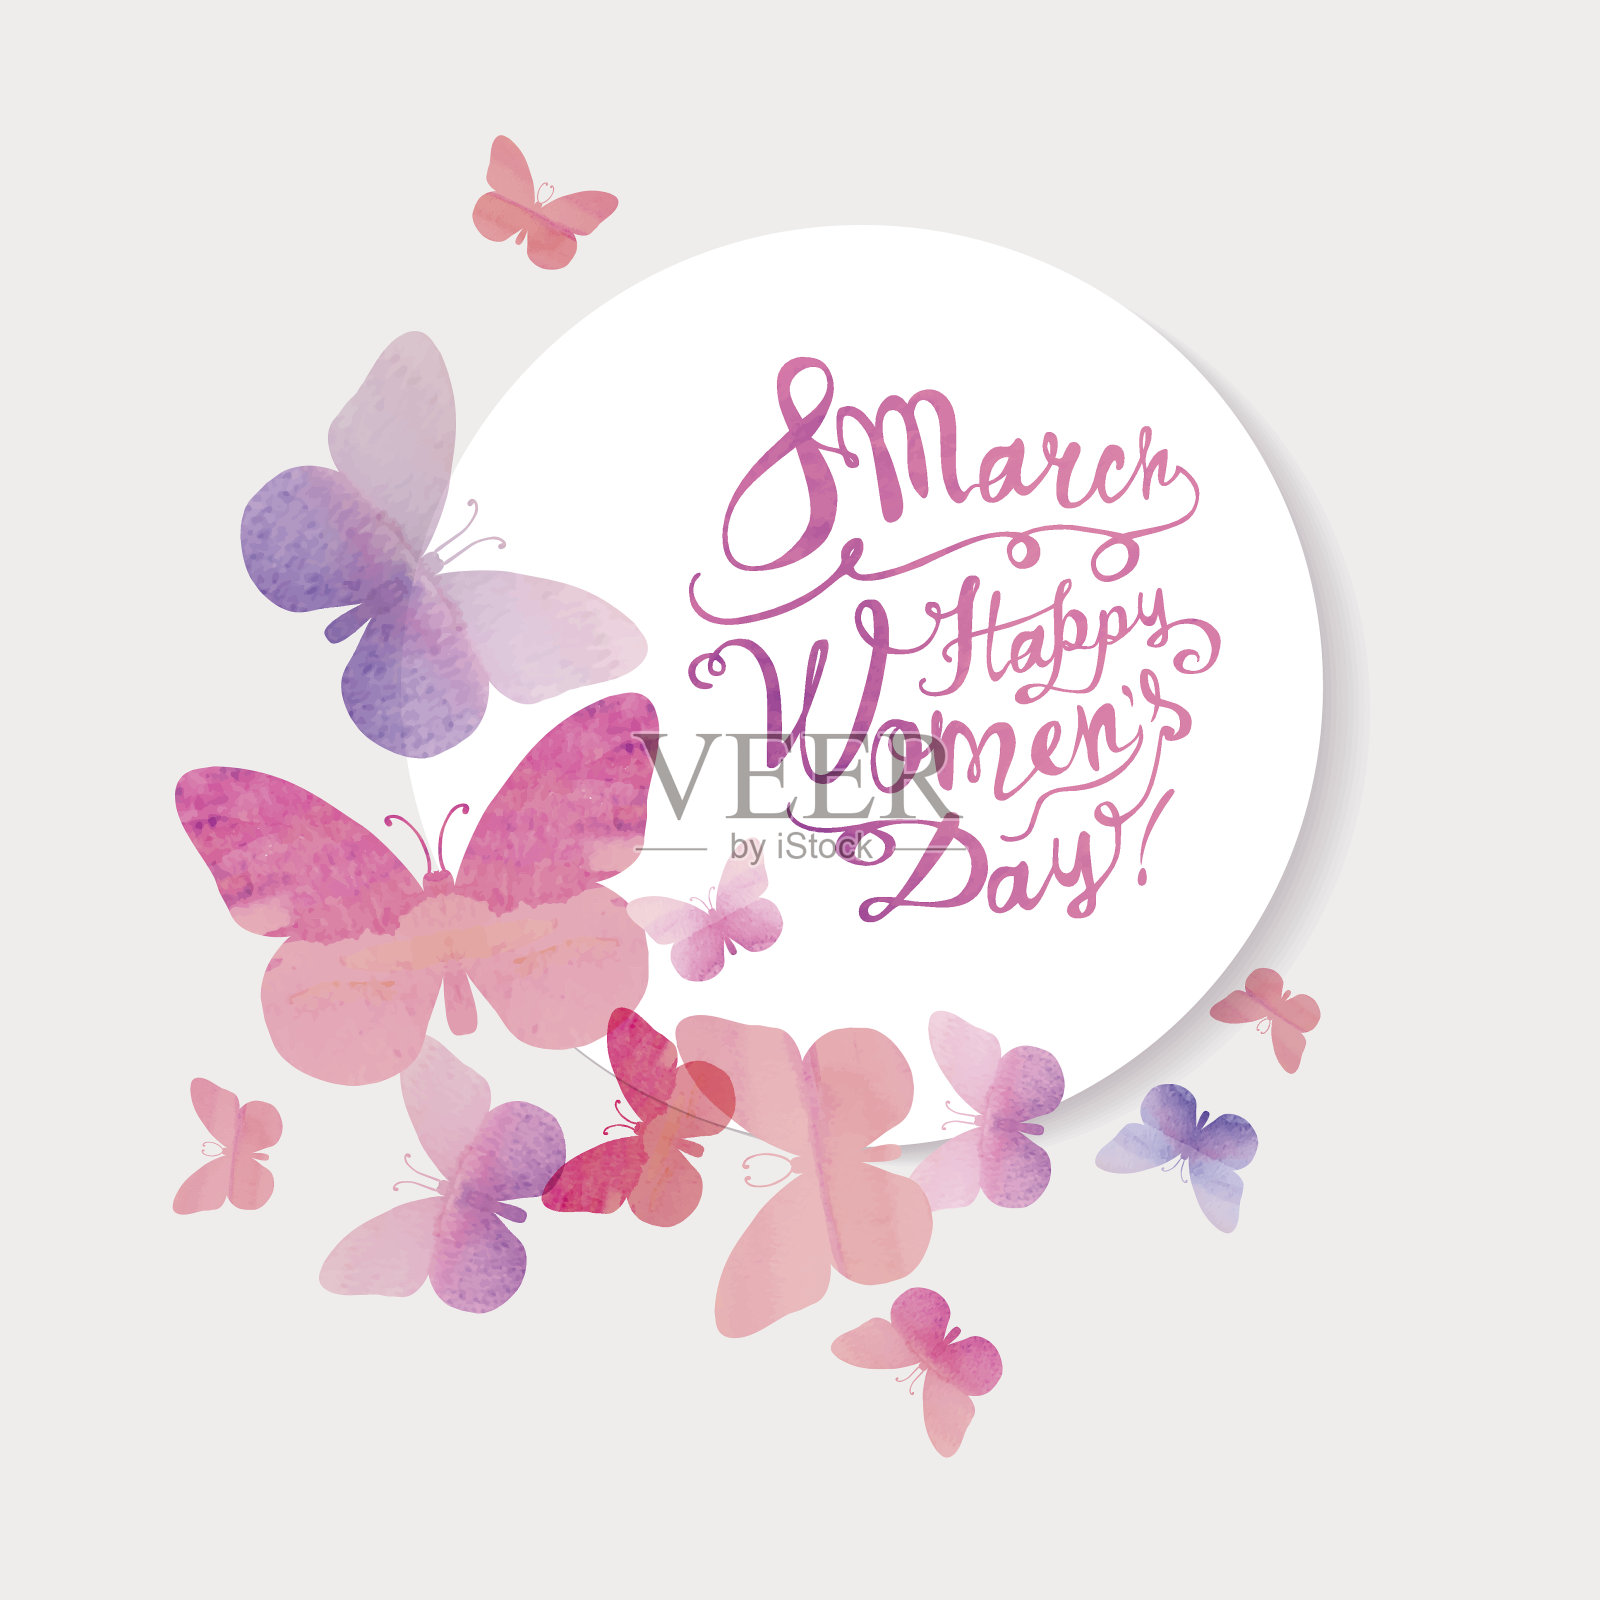 3月8日。女人节快乐!粉红色的水彩蝴蝶插画图片素材